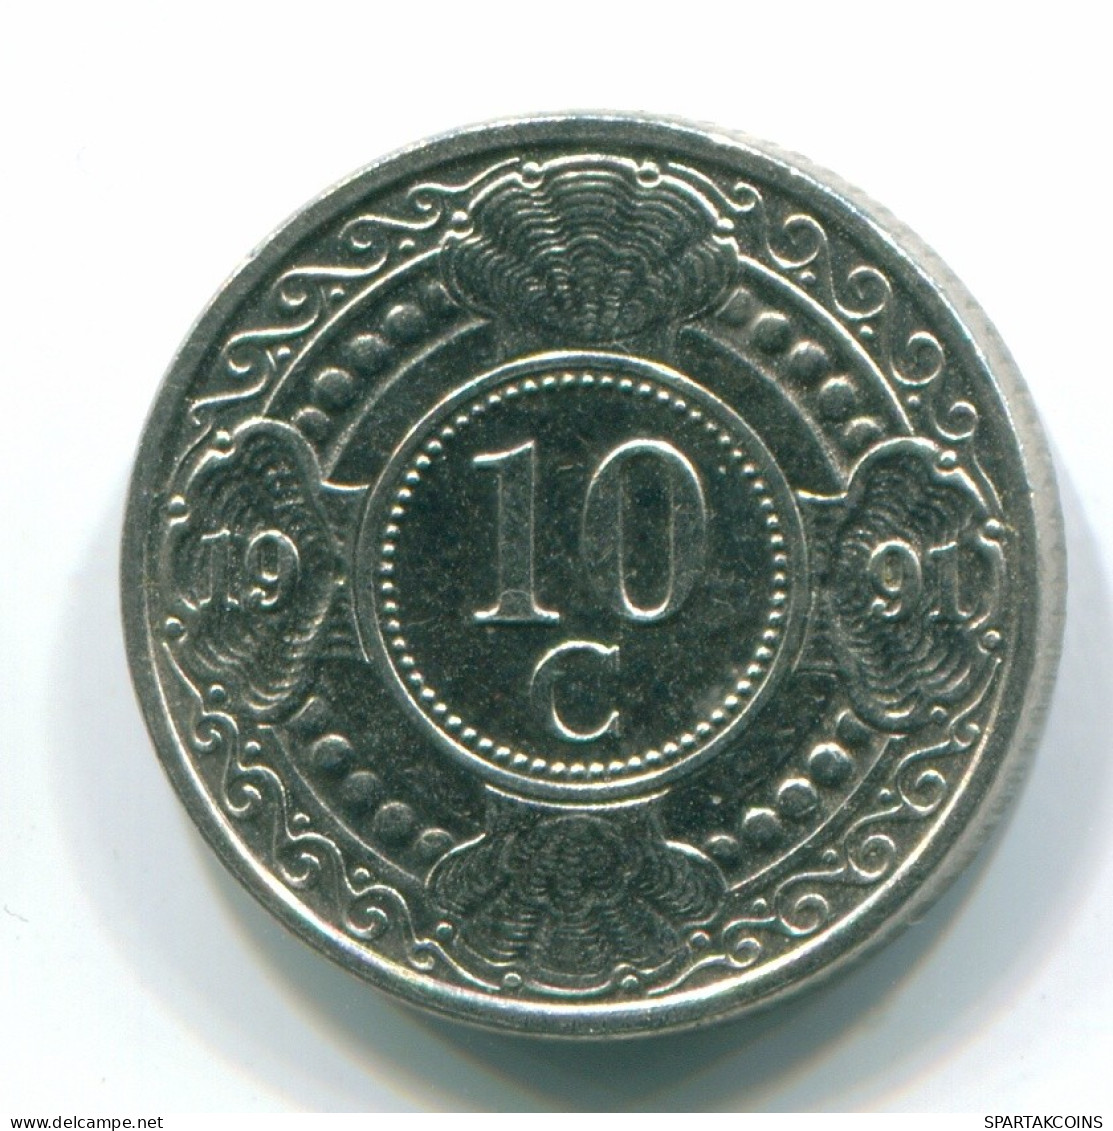 10 CENTS 1991 NIEDERLÄNDISCHE ANTILLEN Nickel Koloniale Münze #S11321.D.A - Antilles Néerlandaises